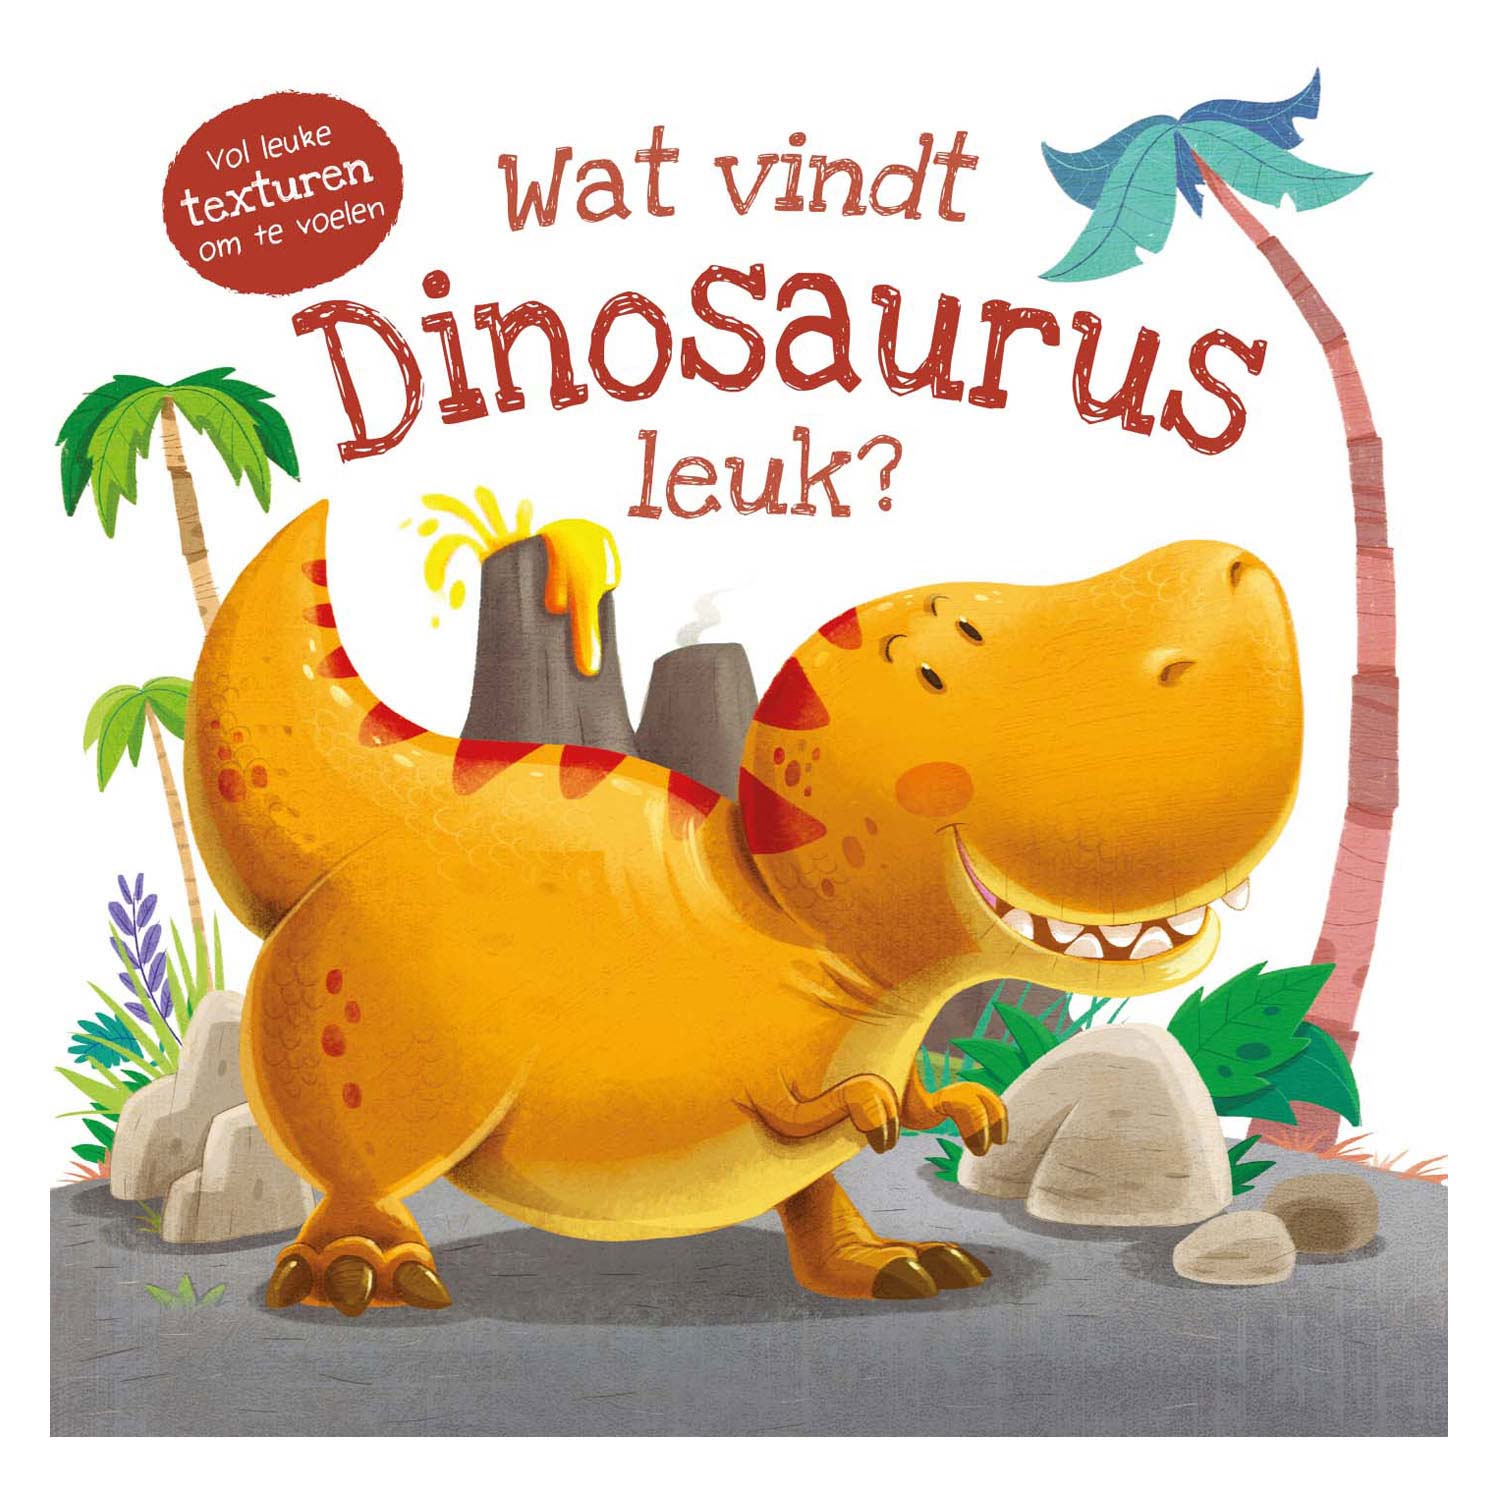 Voelboek - Wat vindt Dinosaurus leuk?